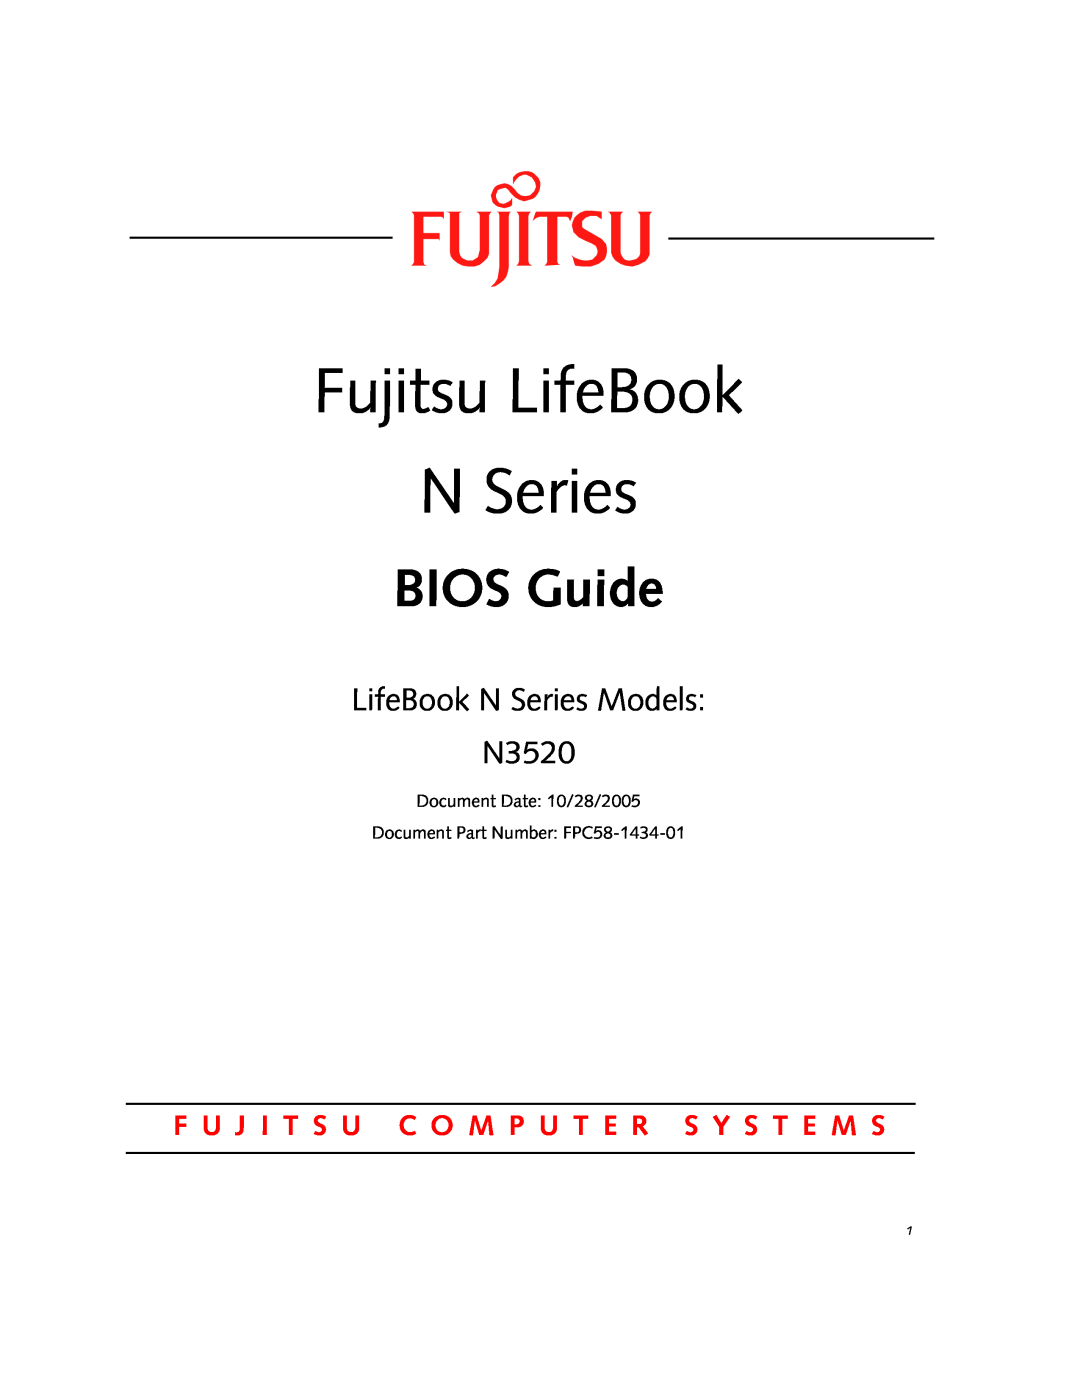 Fujitsu Siemens Computers manual Fujitsu LifeBook N Series, BIOS Guide, LifeBook N Series Models N3520 